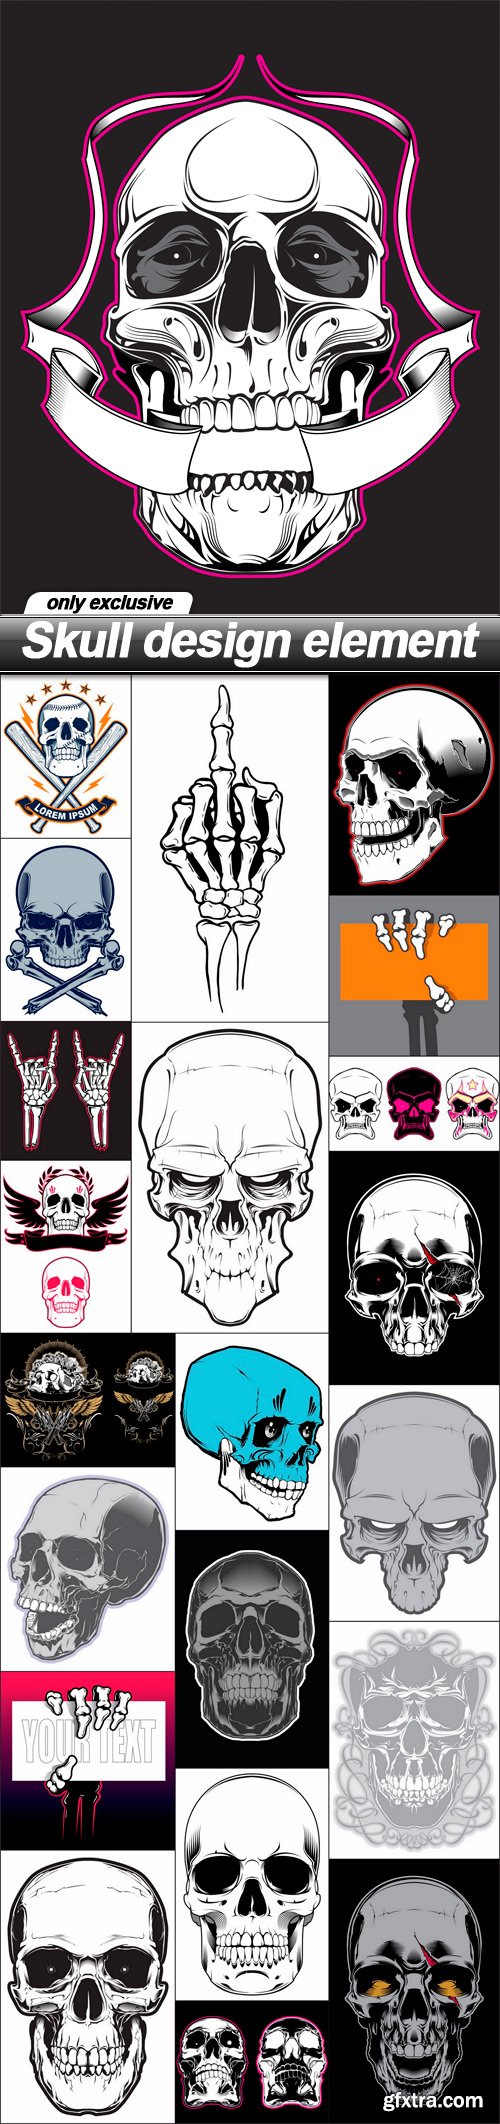 Skull design element - 22 EPS